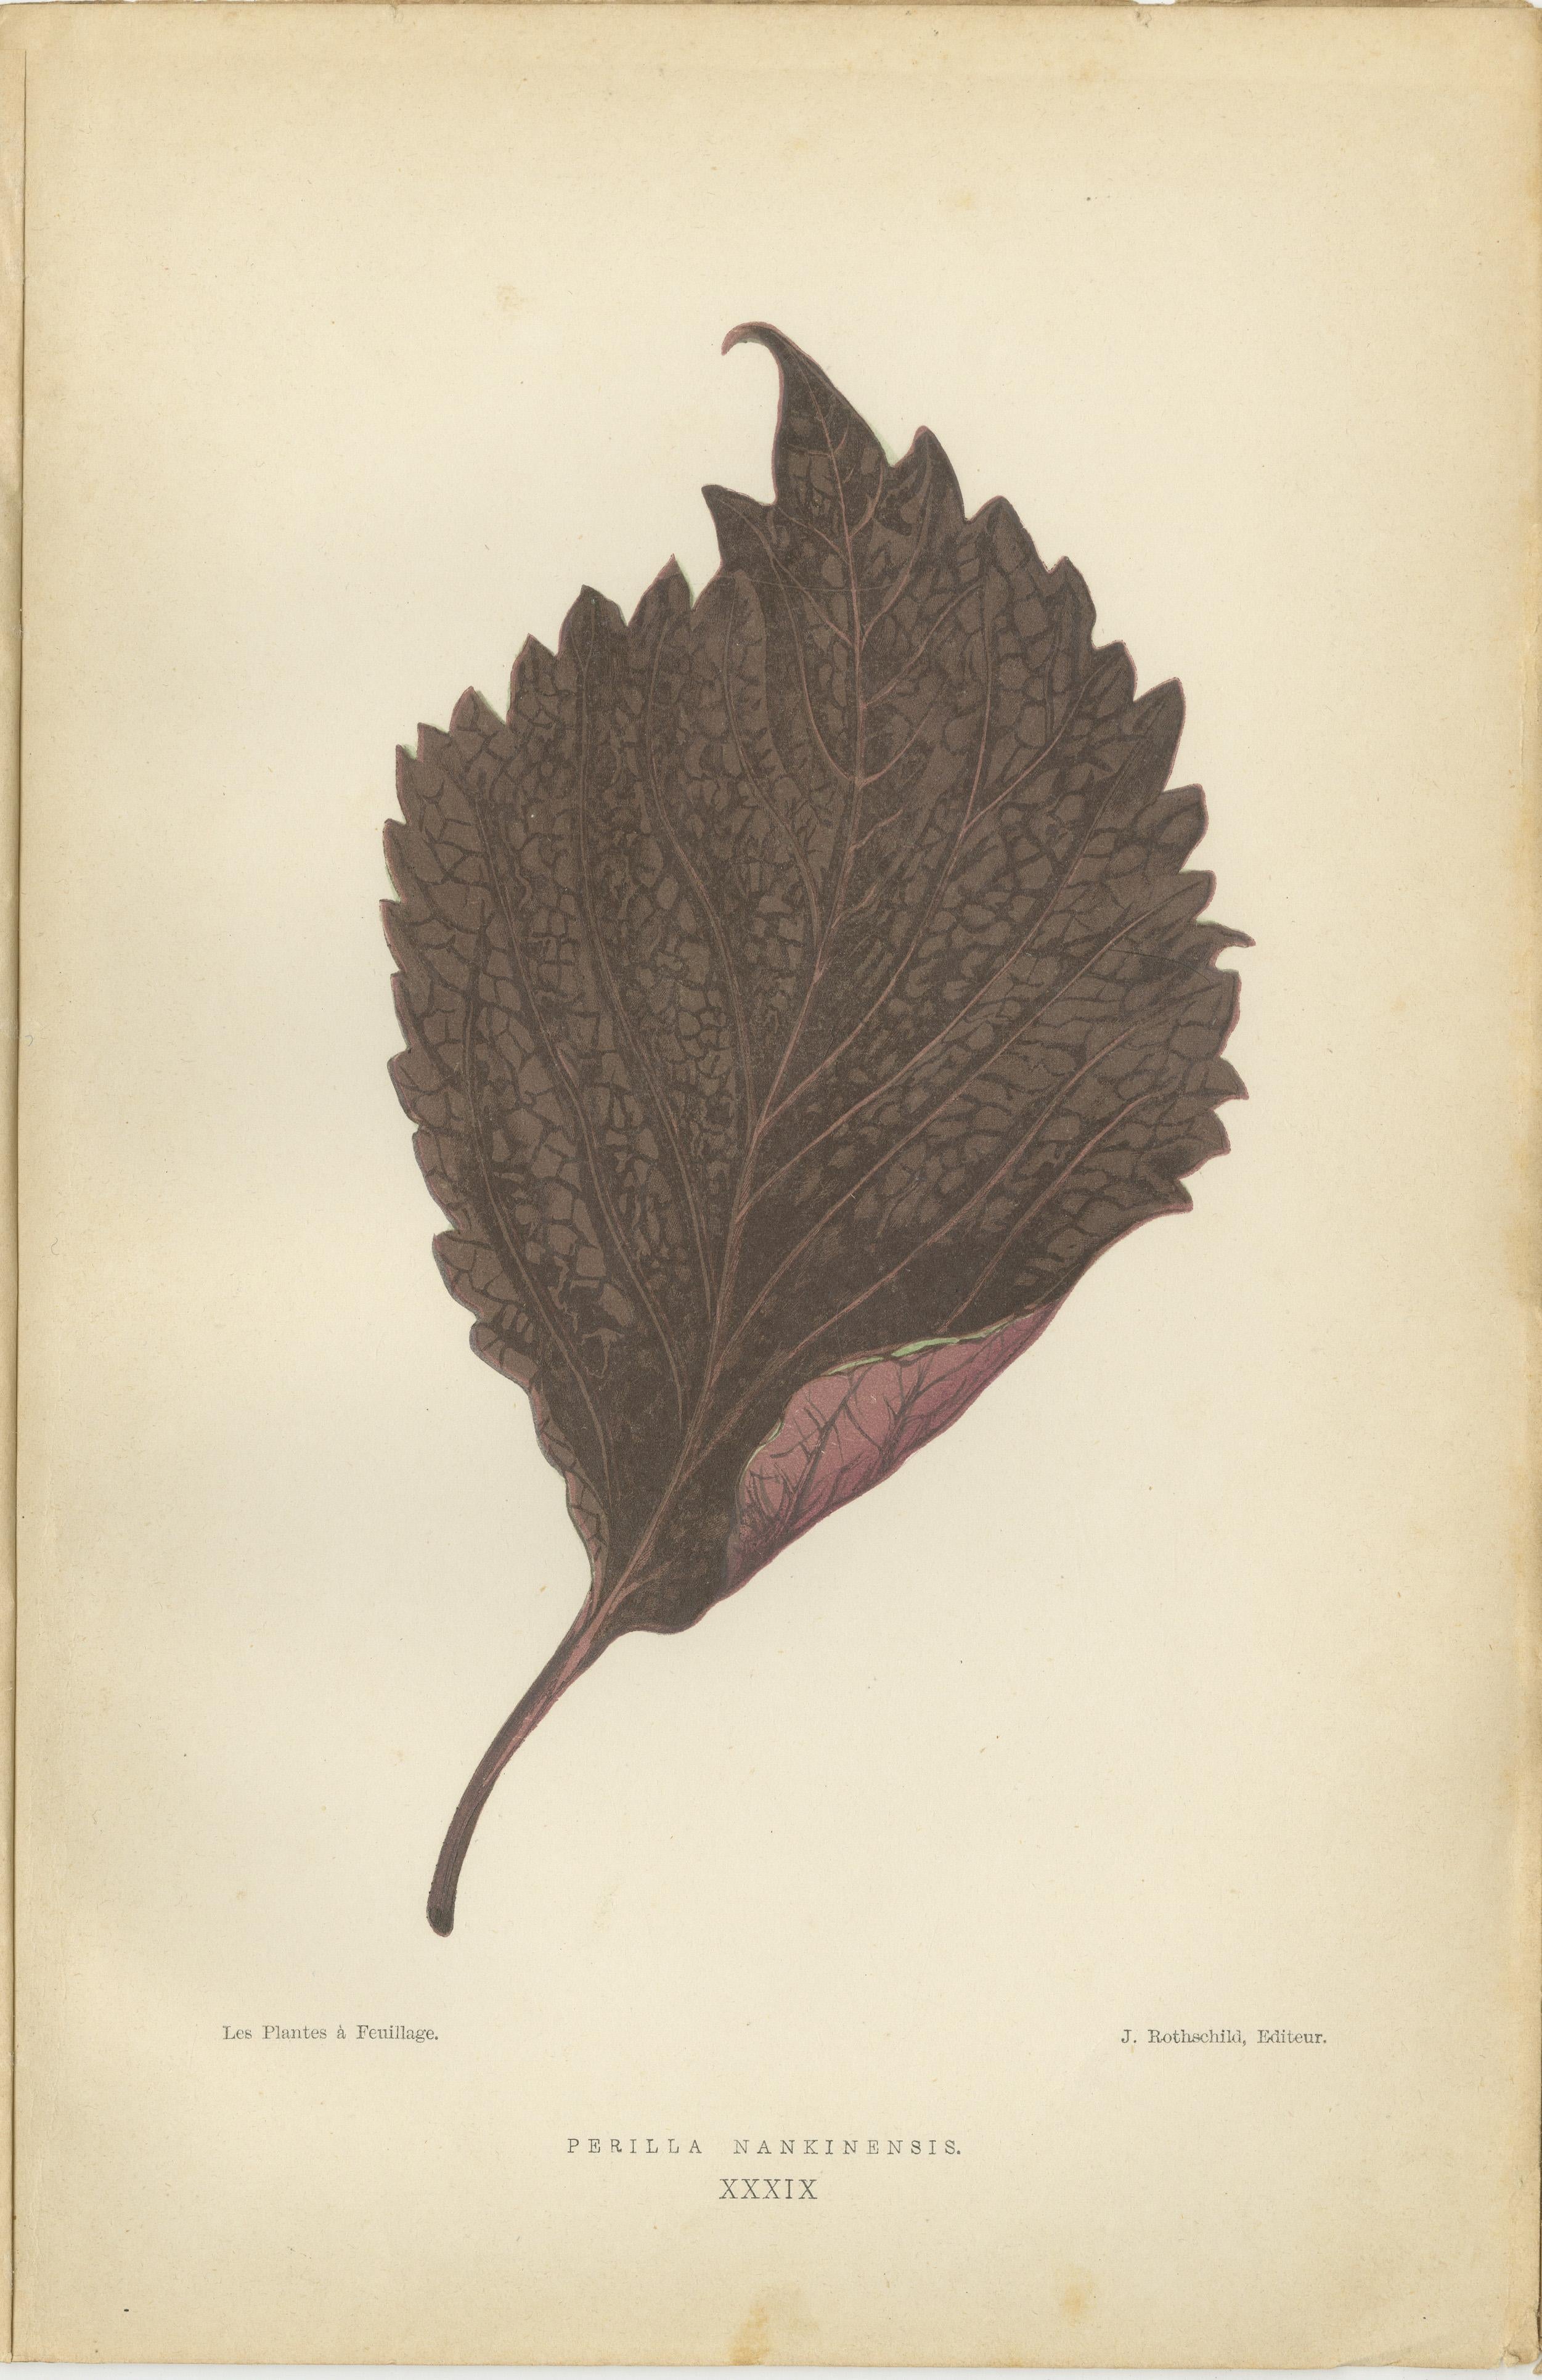 Les estampes sont des illustrations botaniques colorées originales et anciennes tirées du deuxième volume de 